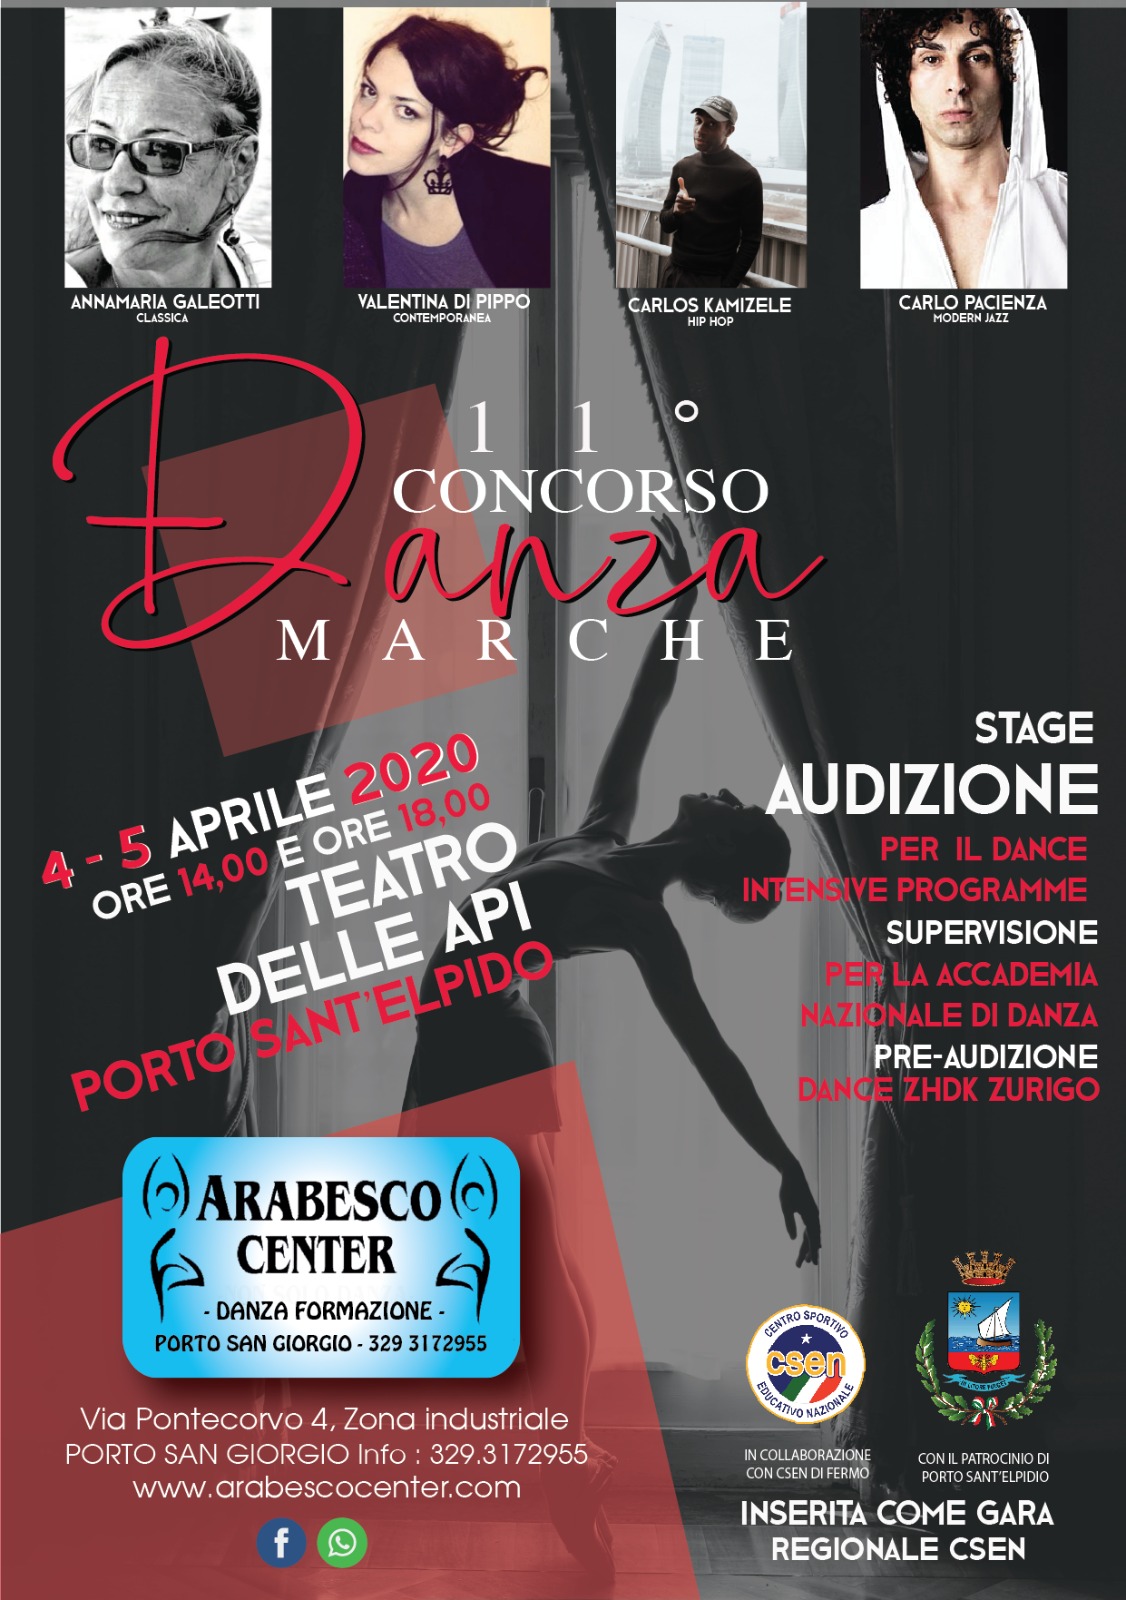 11° Concorso Danza Marche 2020 - Teatro delle Api - Porto Sant'Elpidio 